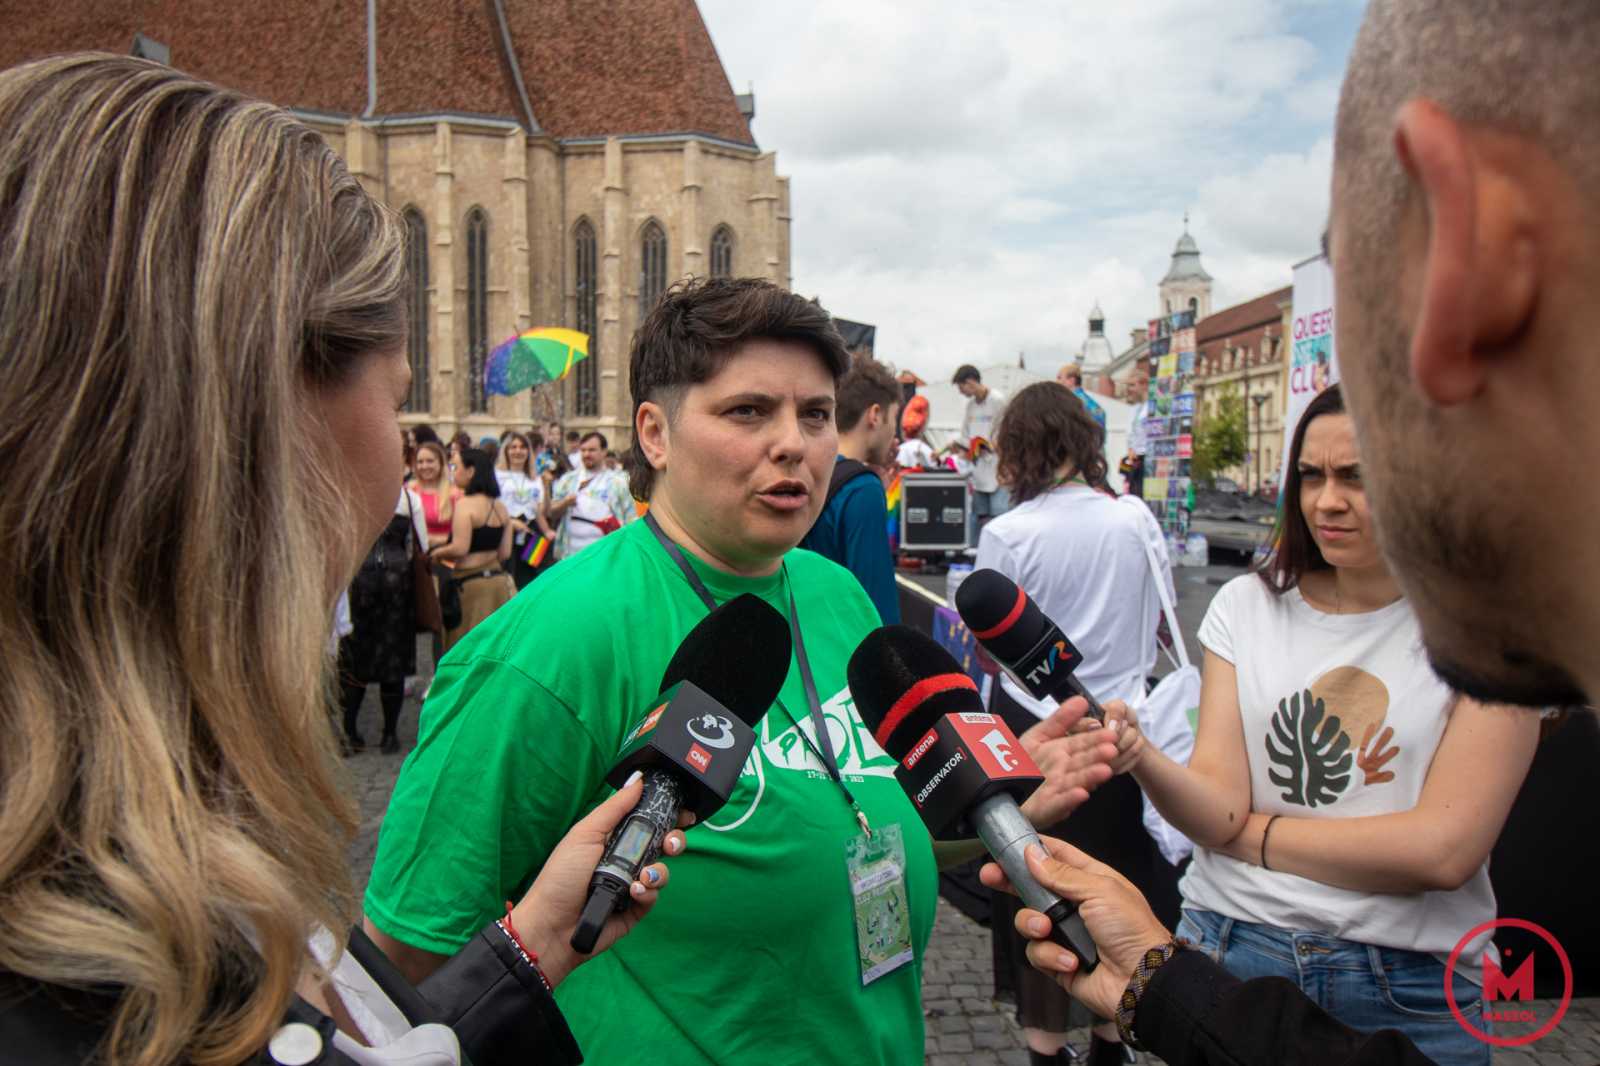 Ruth Borgfjord, a Cluj Pride főszervezője elmondta: céljuk felhívni a figyelmet arra, hogy a szexuális kisebbségek számos hátrányt szenvednek azért, mert őket nem illetik meg azok a jogok, mint a többségi társadalom tagjait. Hangsúlyozta, ők nem elvenni akarnak másoktól, hanem maguknak is ugyanazookat a jogosultságokat kérik, amik például a heteroszexuális polgárokat megilletnek. Ugyanakkor kiemelte: a Pride arról szól, hogy megmutassák a társadalomnak, a szexuális kisebbségek igenis léteznek, és nem lehet úgy tenni, mintha egy nemlétező problémról volna szó. 